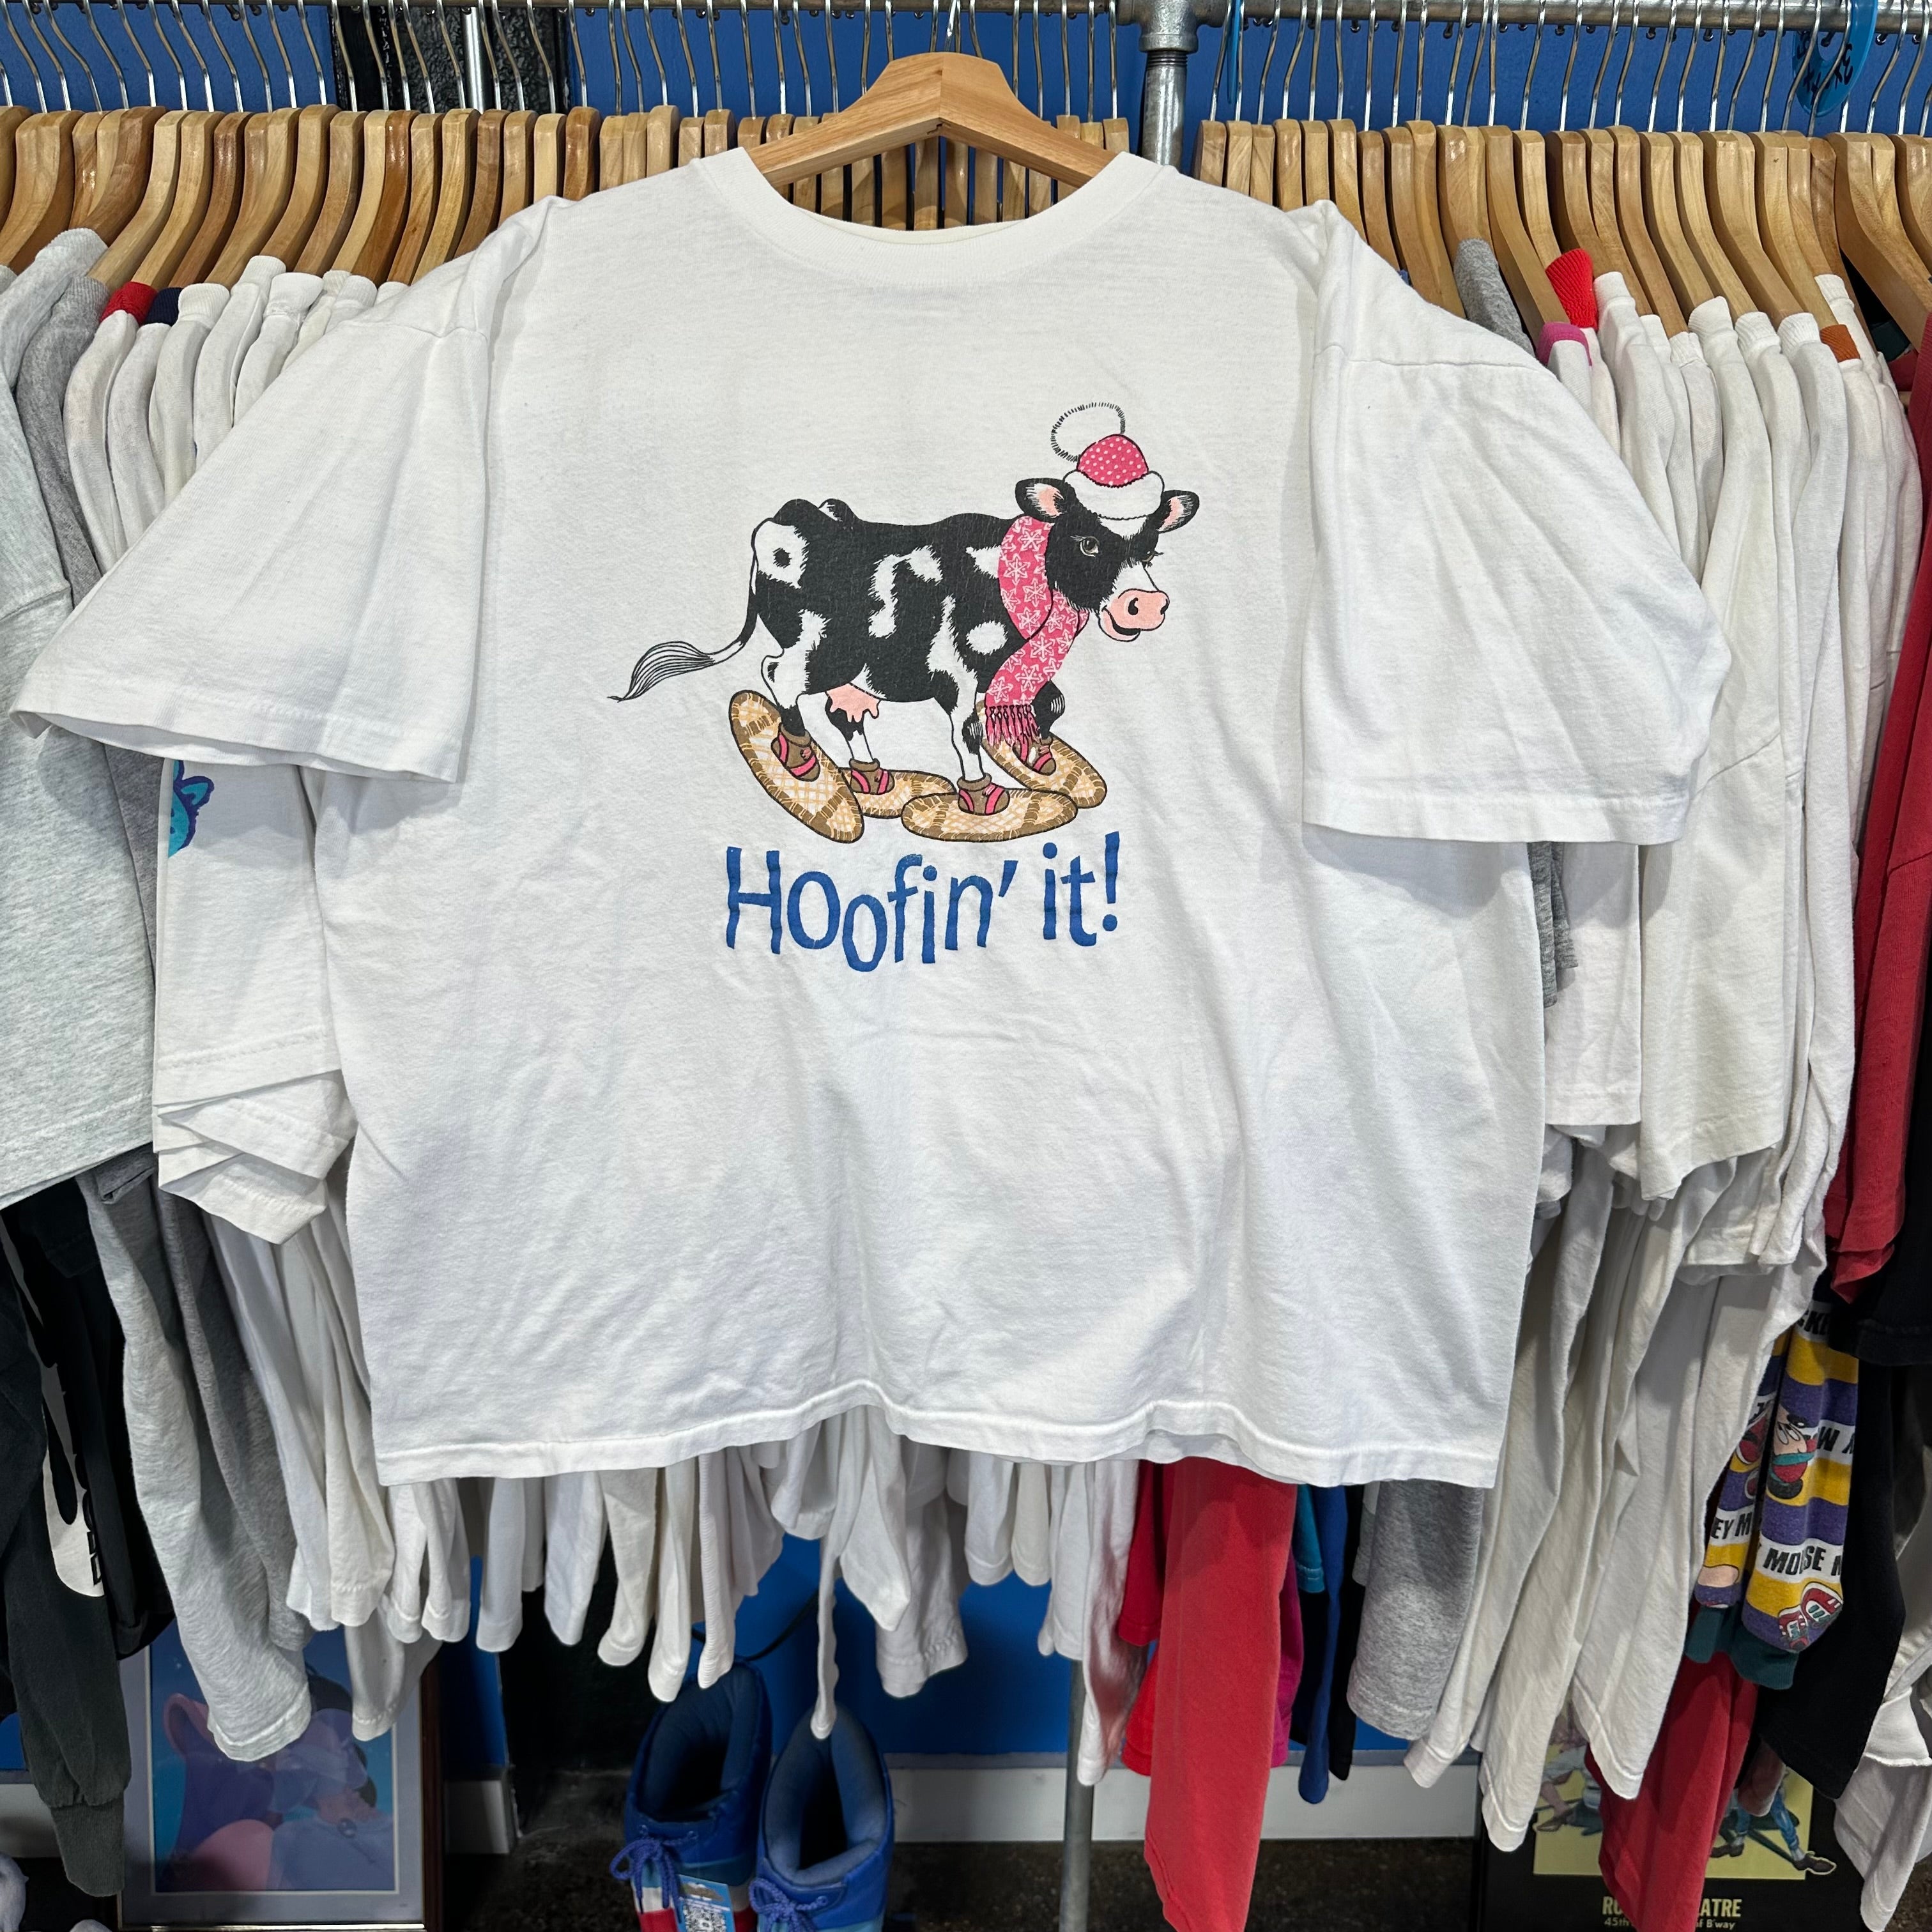 Hoofin’ It T-Shirt